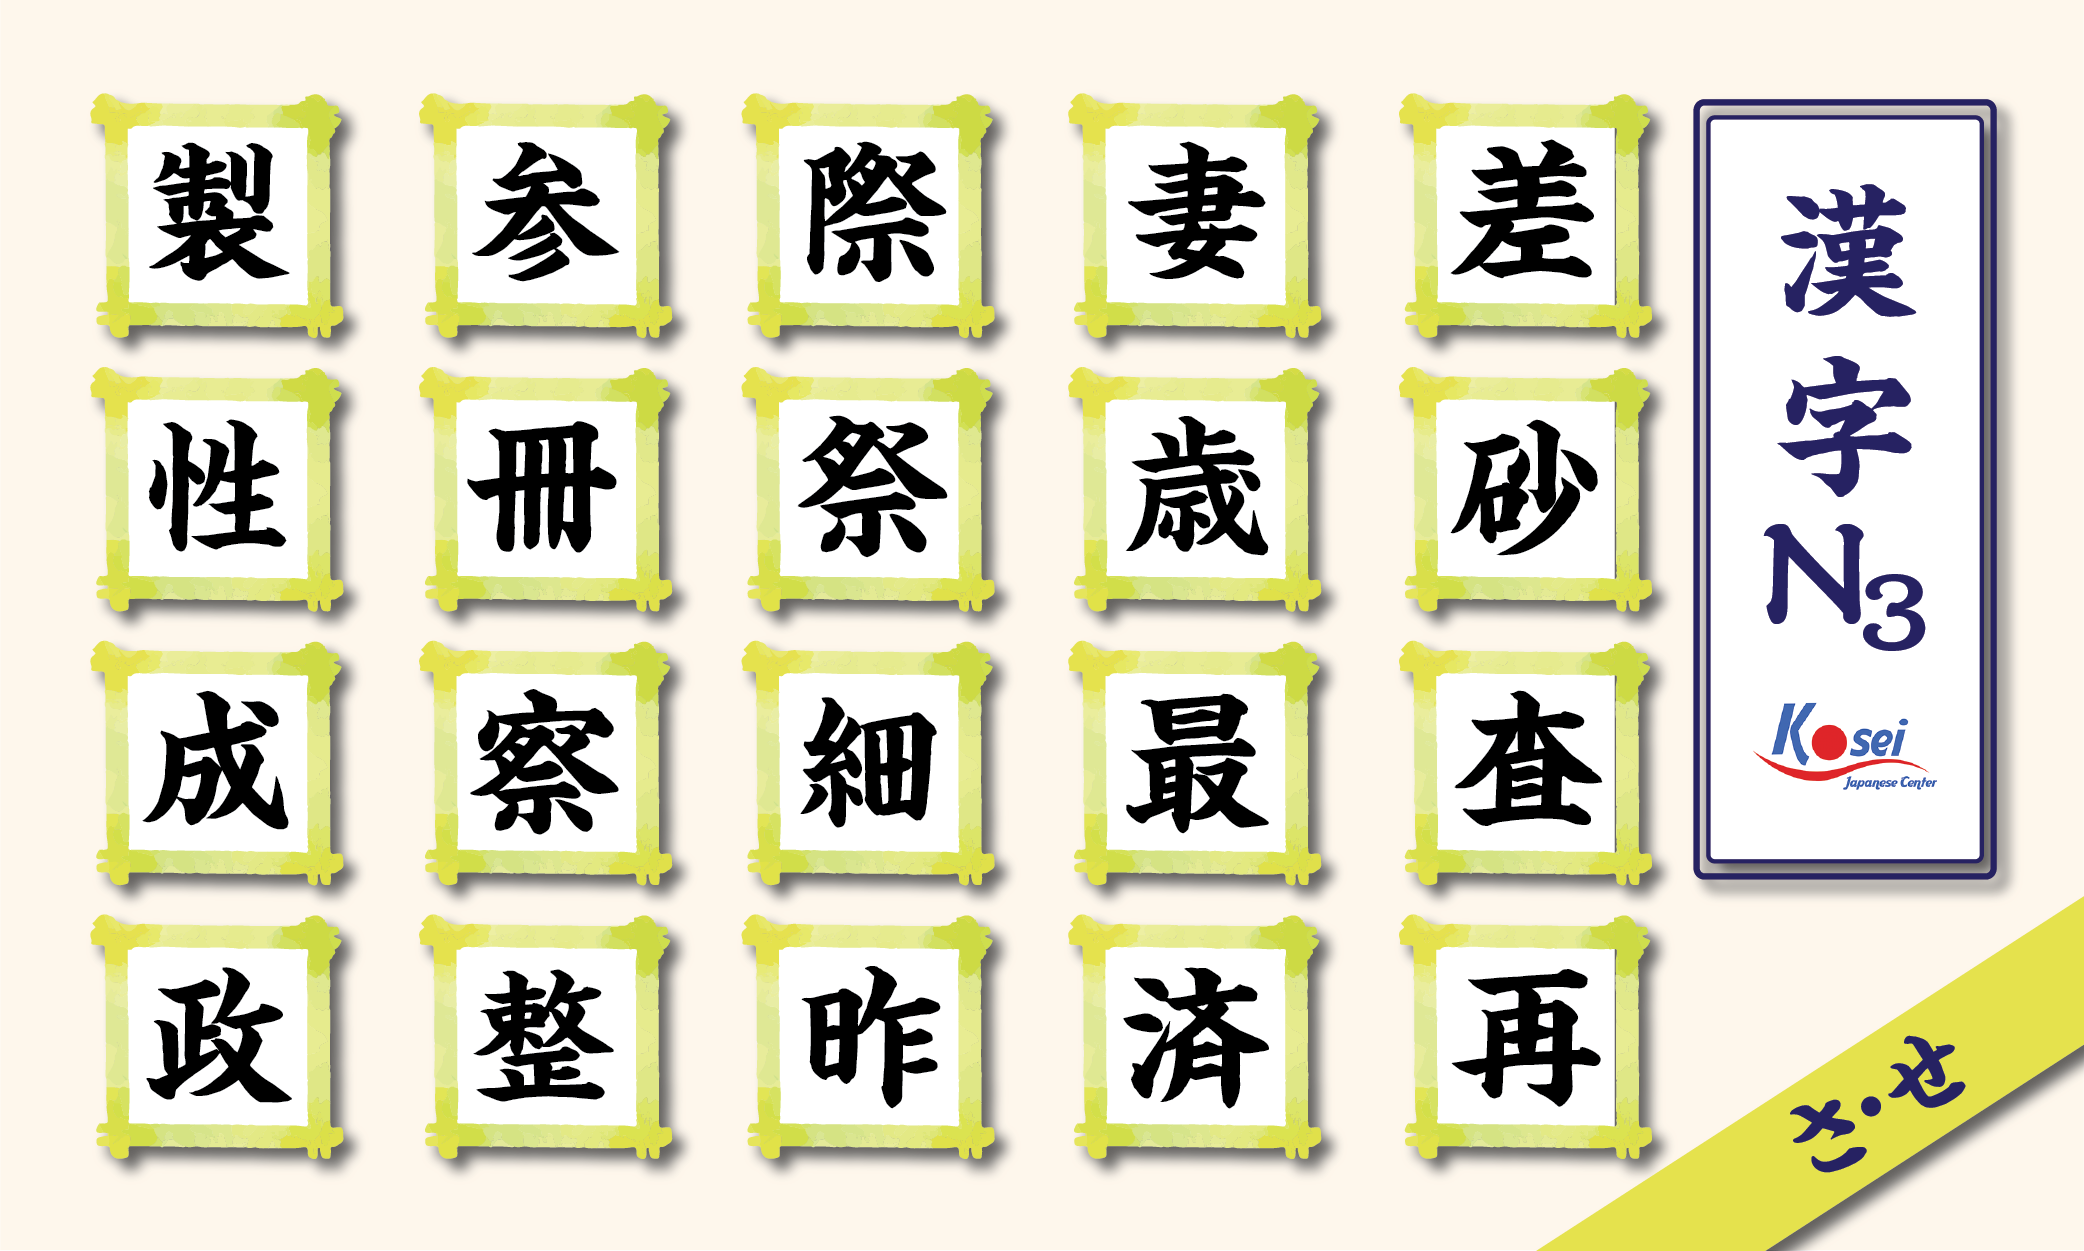 Tổng hợp Kanji N3 theo âm on: hàng S (phần 1)